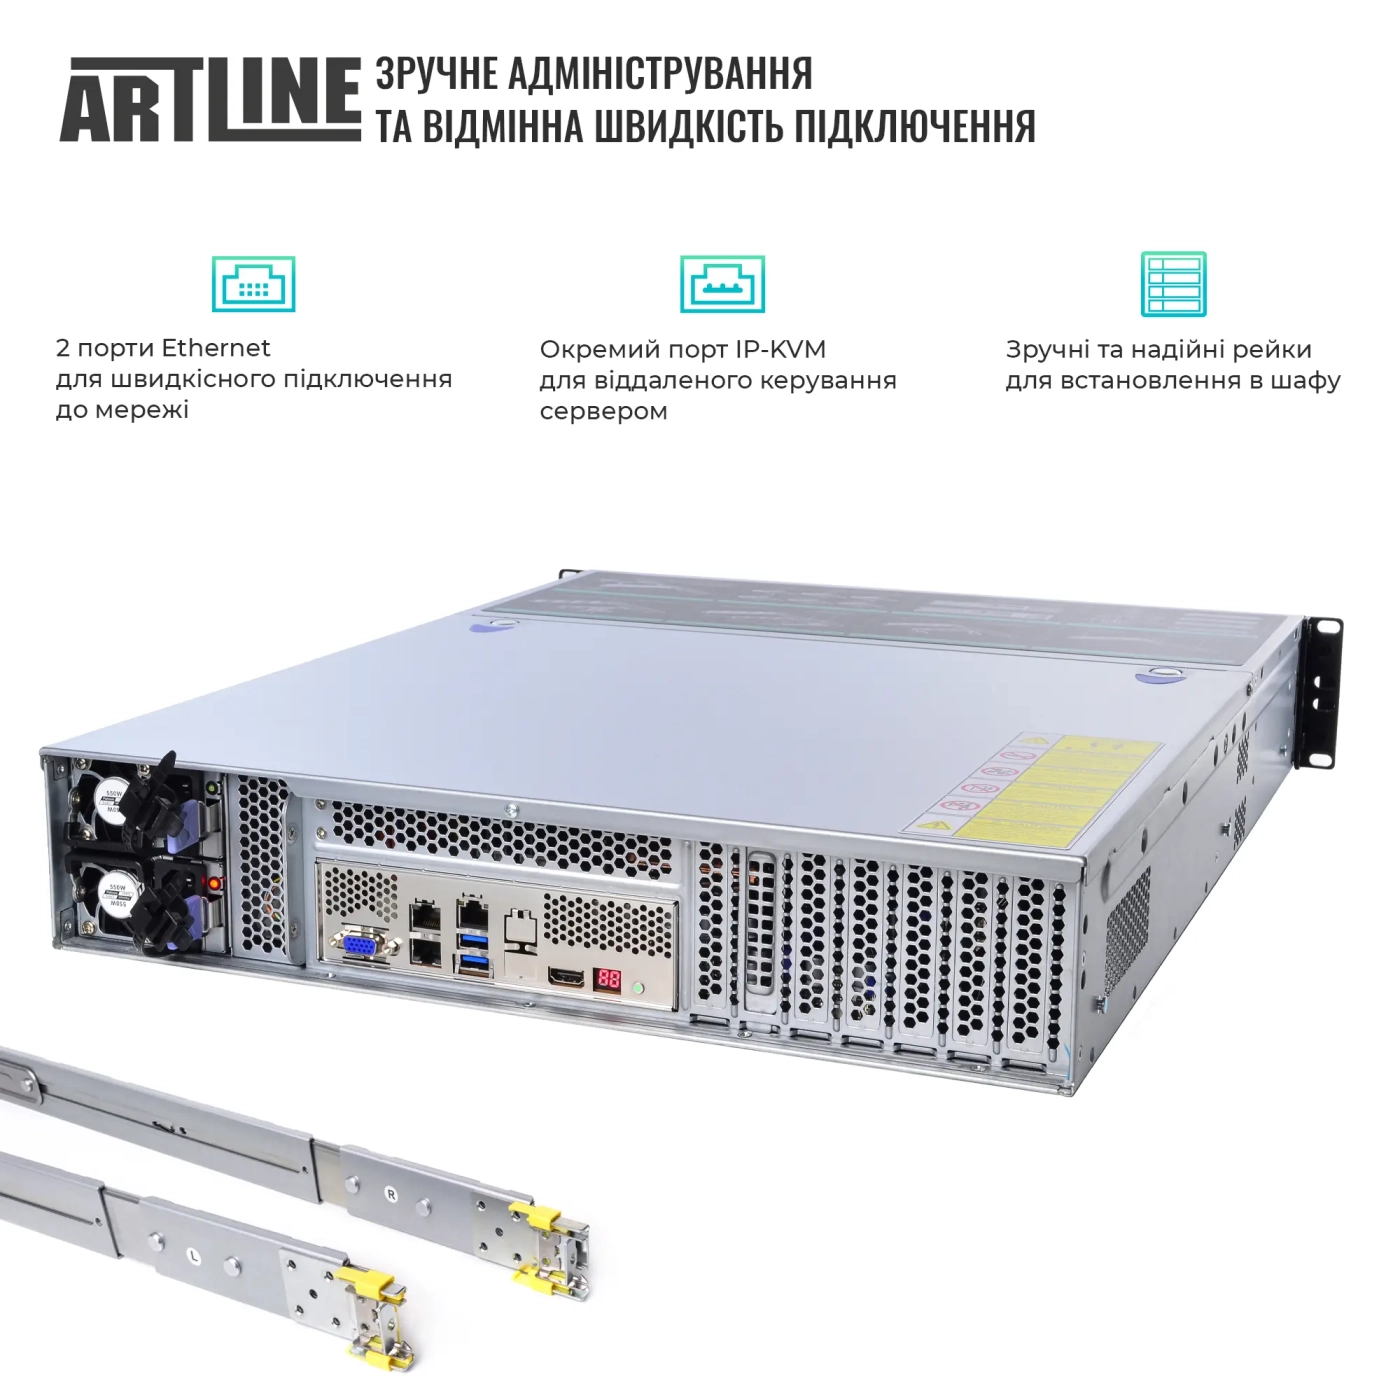 Купить Сервер ARTLINE Business R37 (R37v60) - фото 2